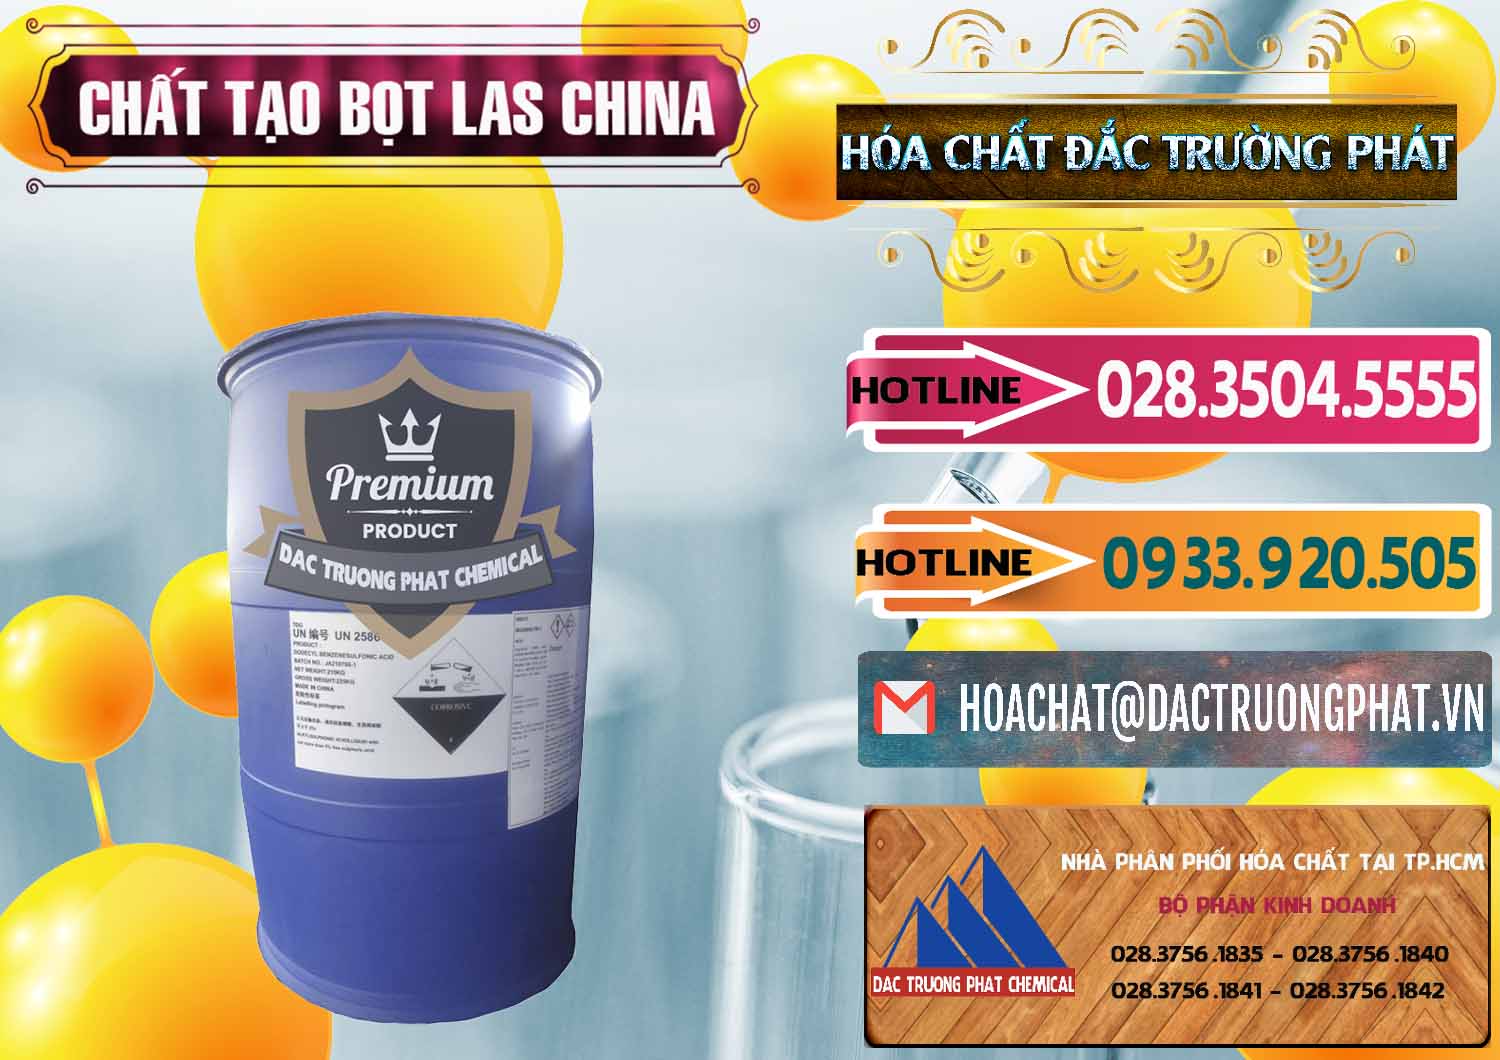 Công ty bán _ phân phối Chất tạo bọt Las Trung Quốc China - 0451 - Cty chuyên nhập khẩu ( cung cấp ) hóa chất tại TP.HCM - dactruongphat.vn